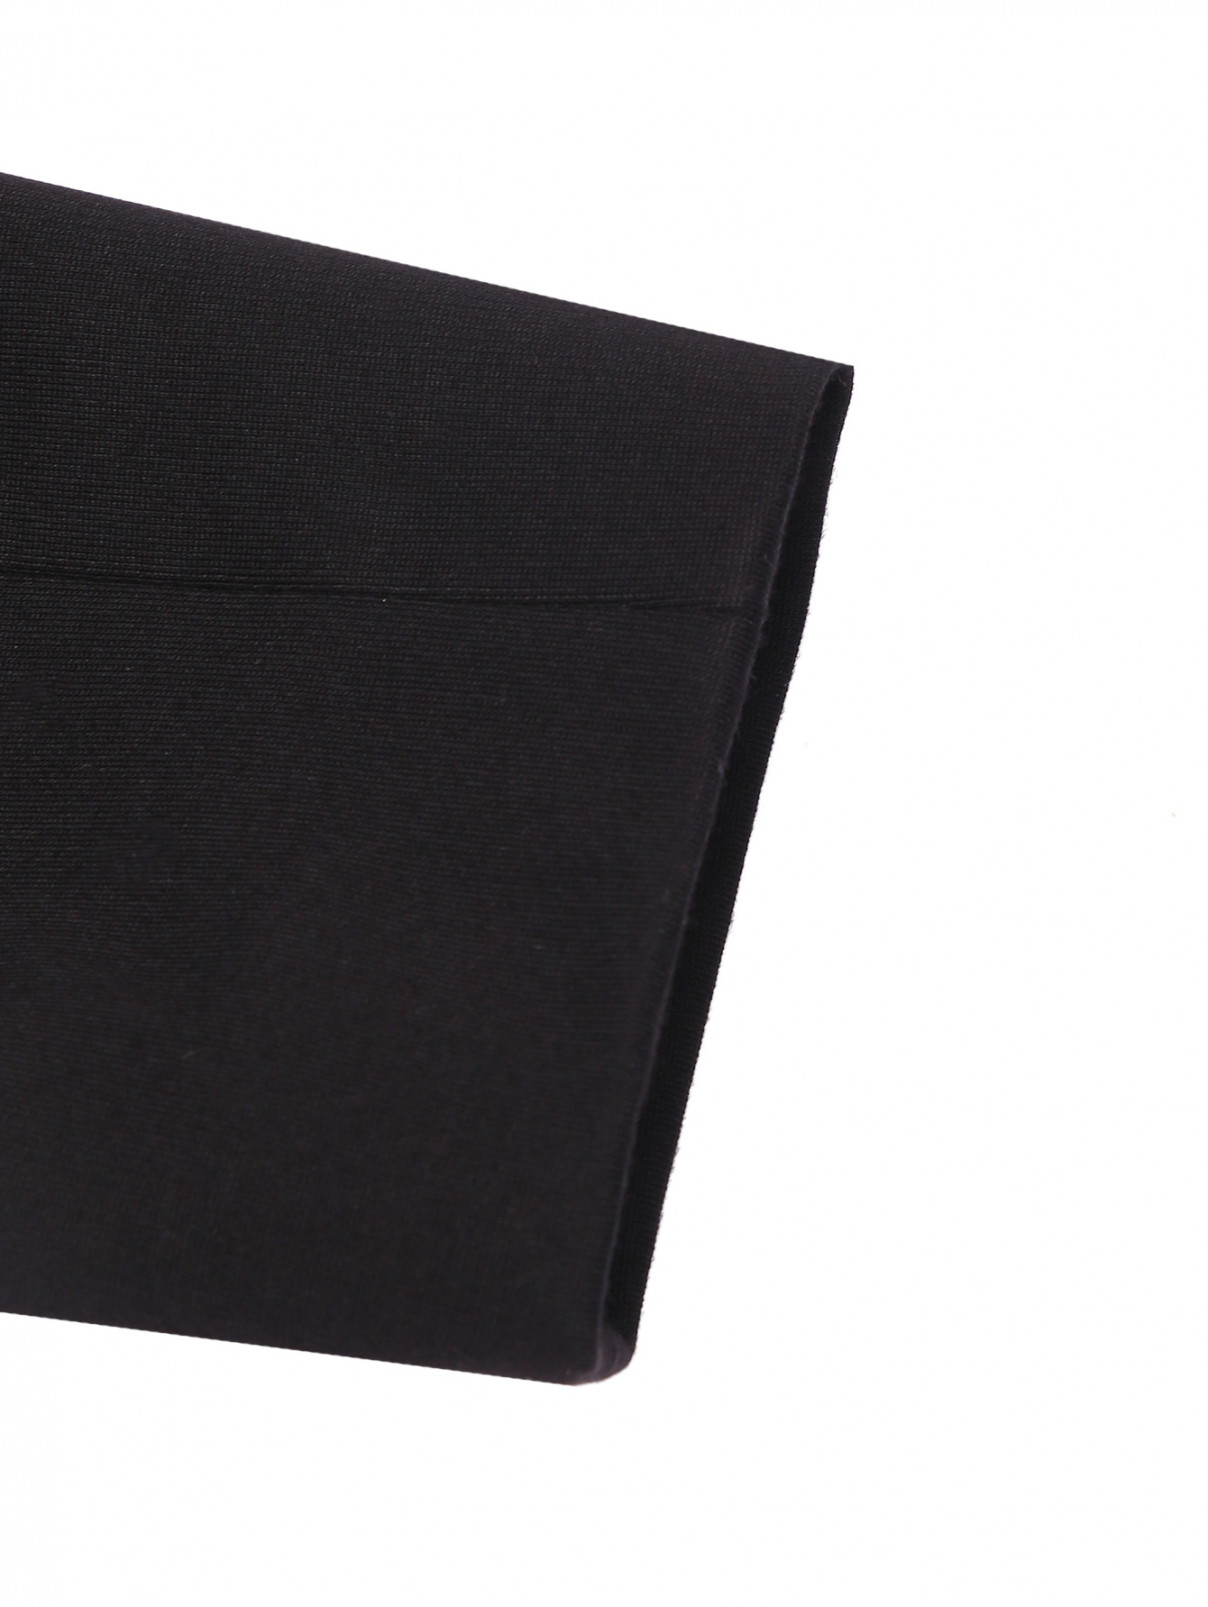 Укороченная блуза из смешанной вискозы на молнии Dorothee Schumacher  –  Деталь1  – Цвет:  Черный